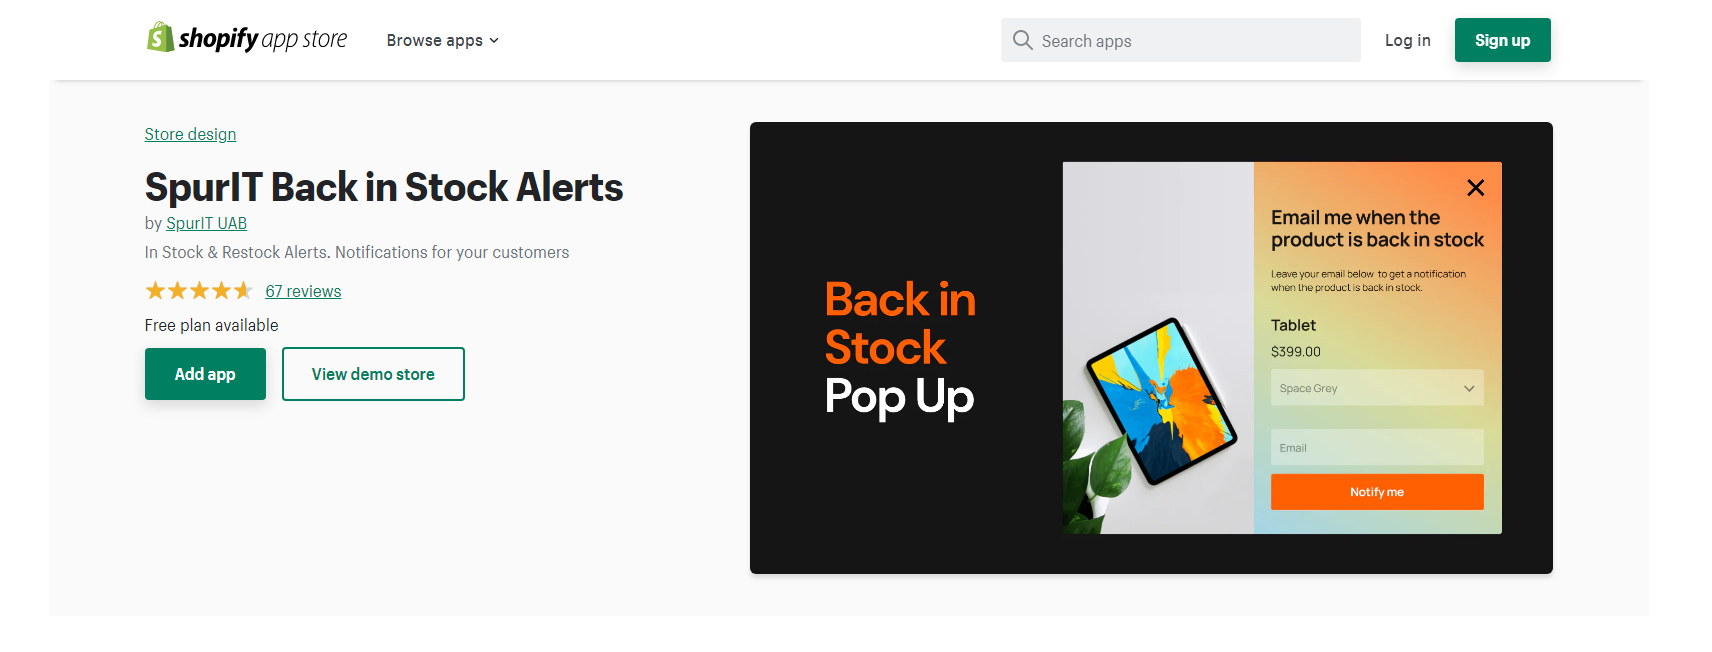 SpurlIT Back in Stock Alerts - Shopify Back in Stock Apps